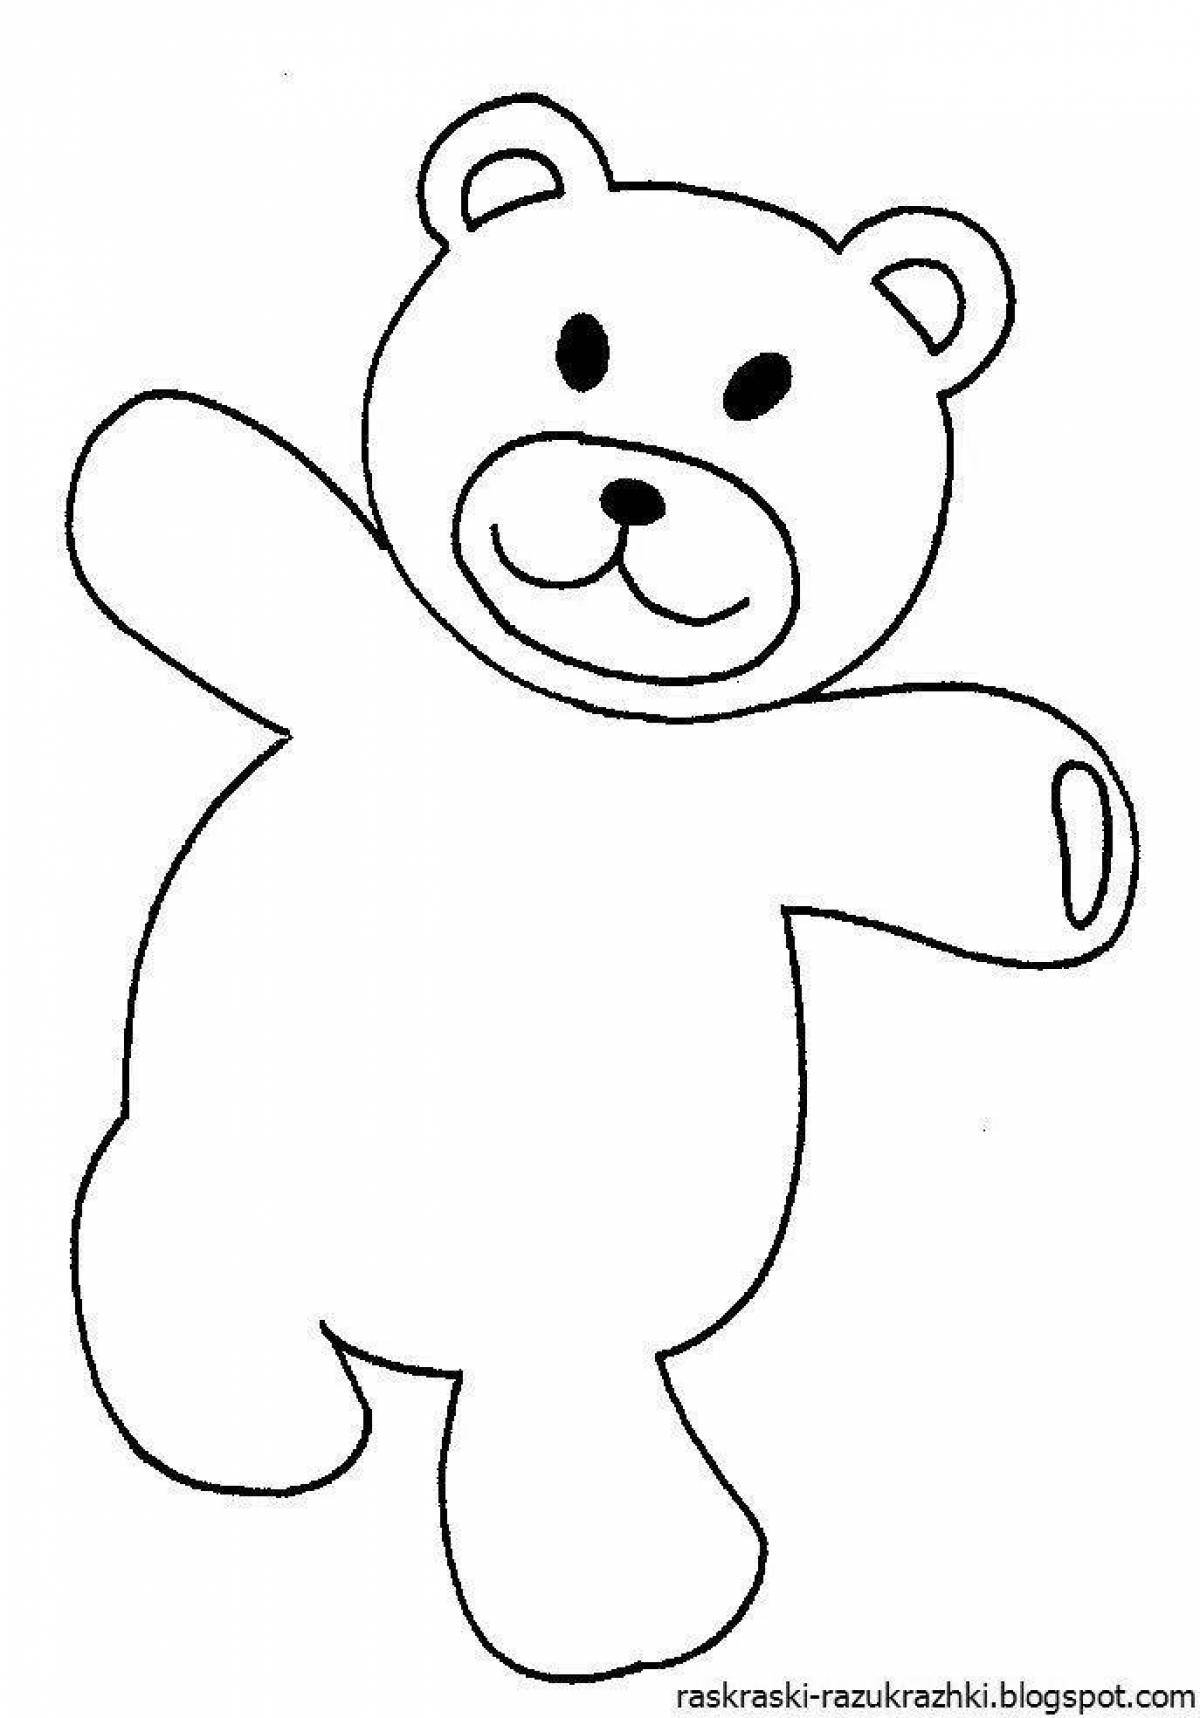 Раскраска медведь для детей 2 3 лет. Раскраска. Медвежонок. Мишка раскраска для детей. Трафарет мишки для рисования. Раскраска "мишки".